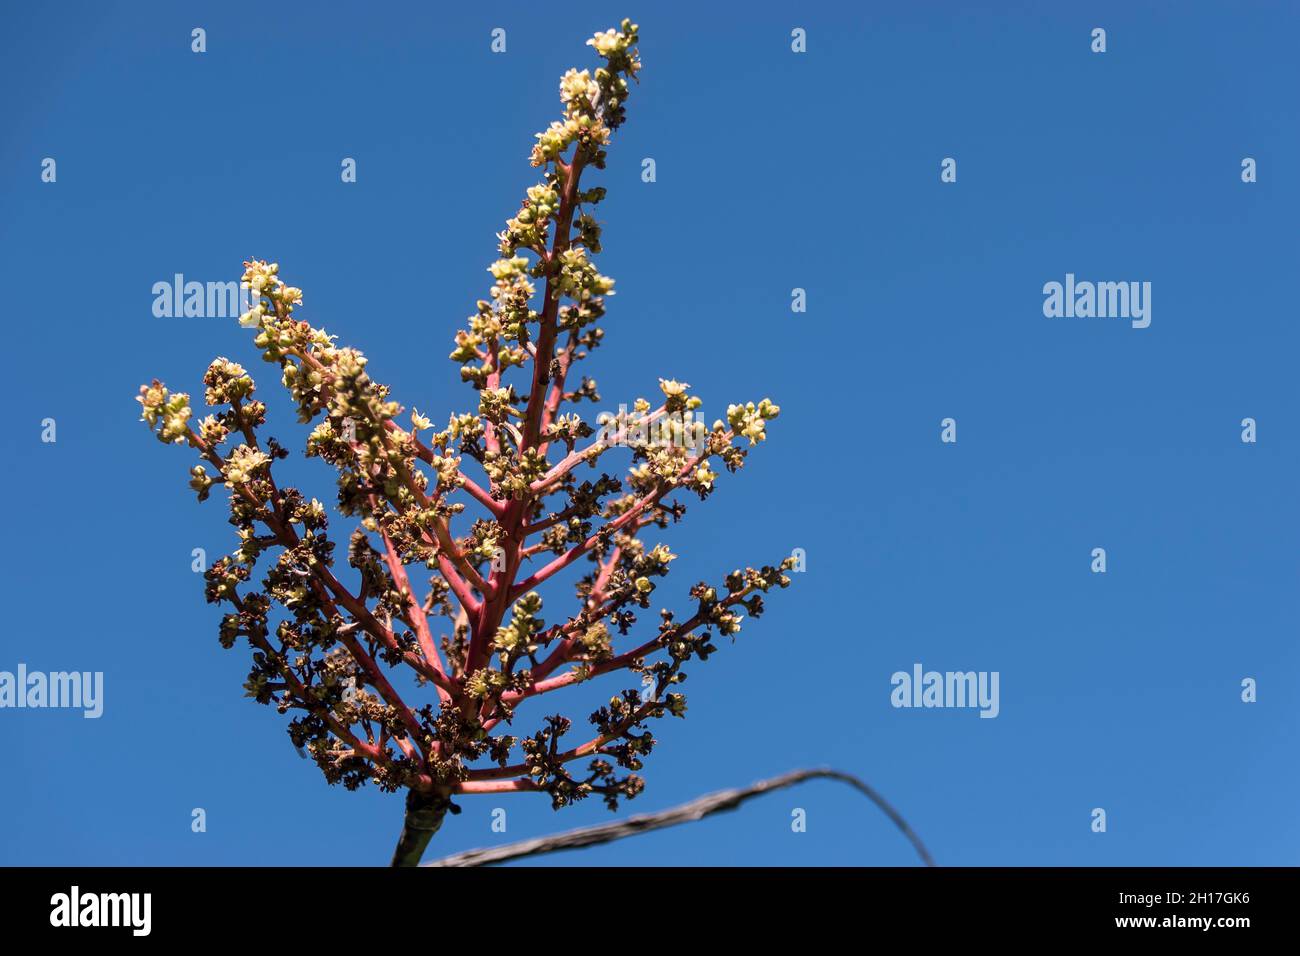 Mangobaum (Mangifera Indica) blüht in Queensland, Australien. Hunderte von winzigen Blumen. Blauer Himmel. Platz kopieren, Hintergrund. Stockfoto